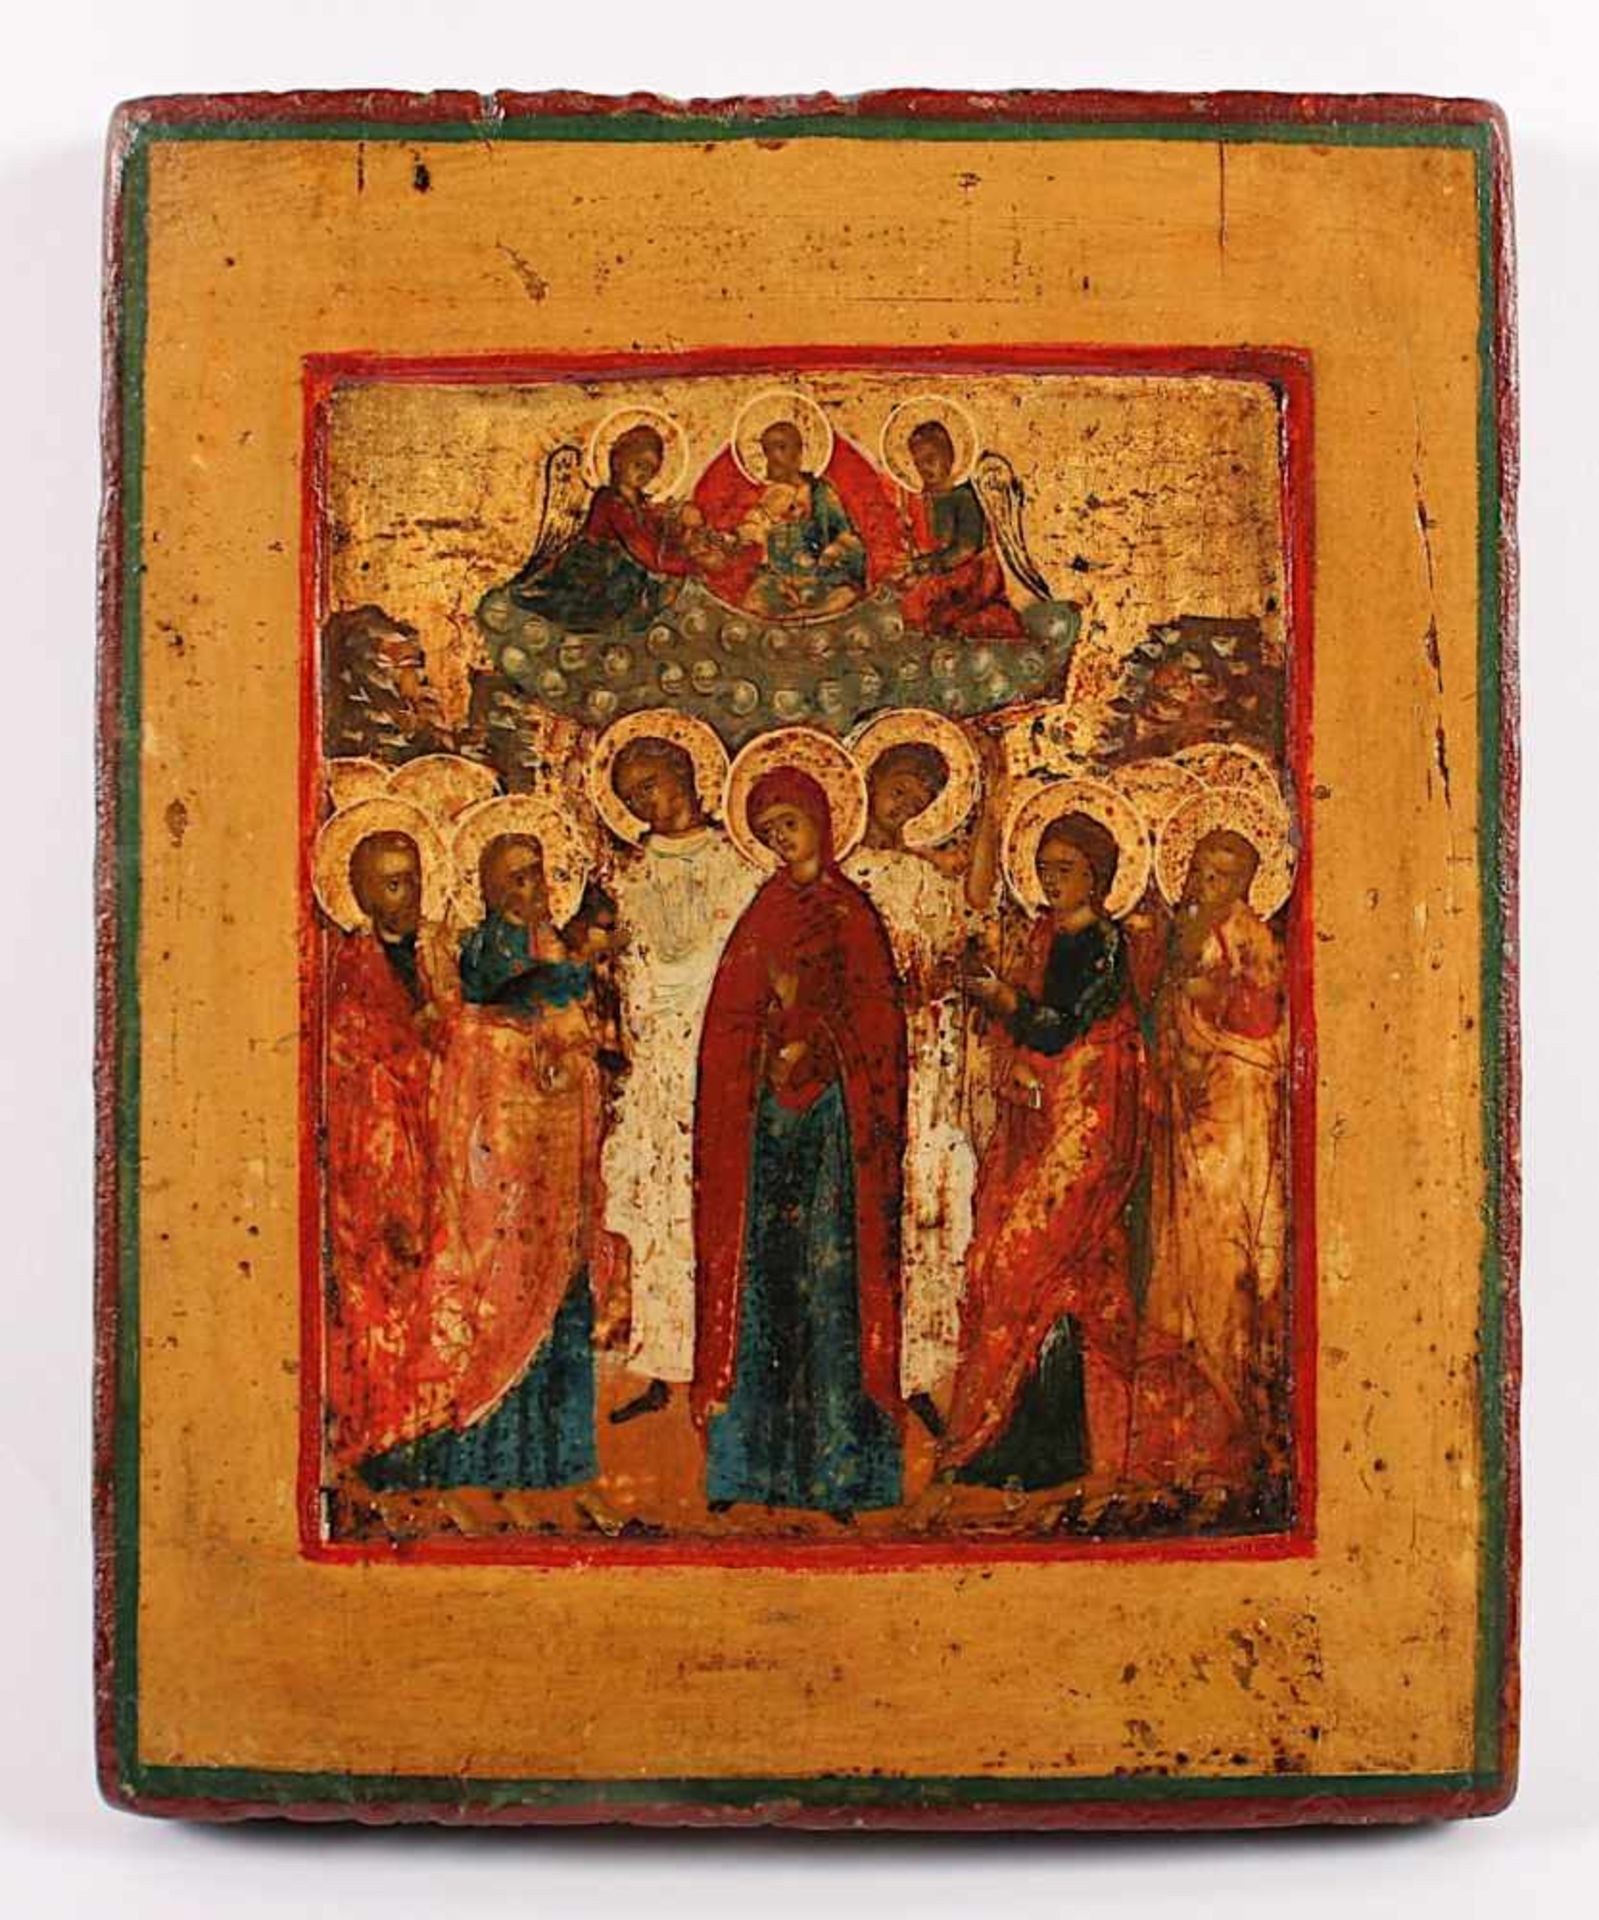 IKONE, "Christi Himmelfahrt", Tempera/Holz, 22 x 18, Goldhöhungen, oben in der Mitte auf einer